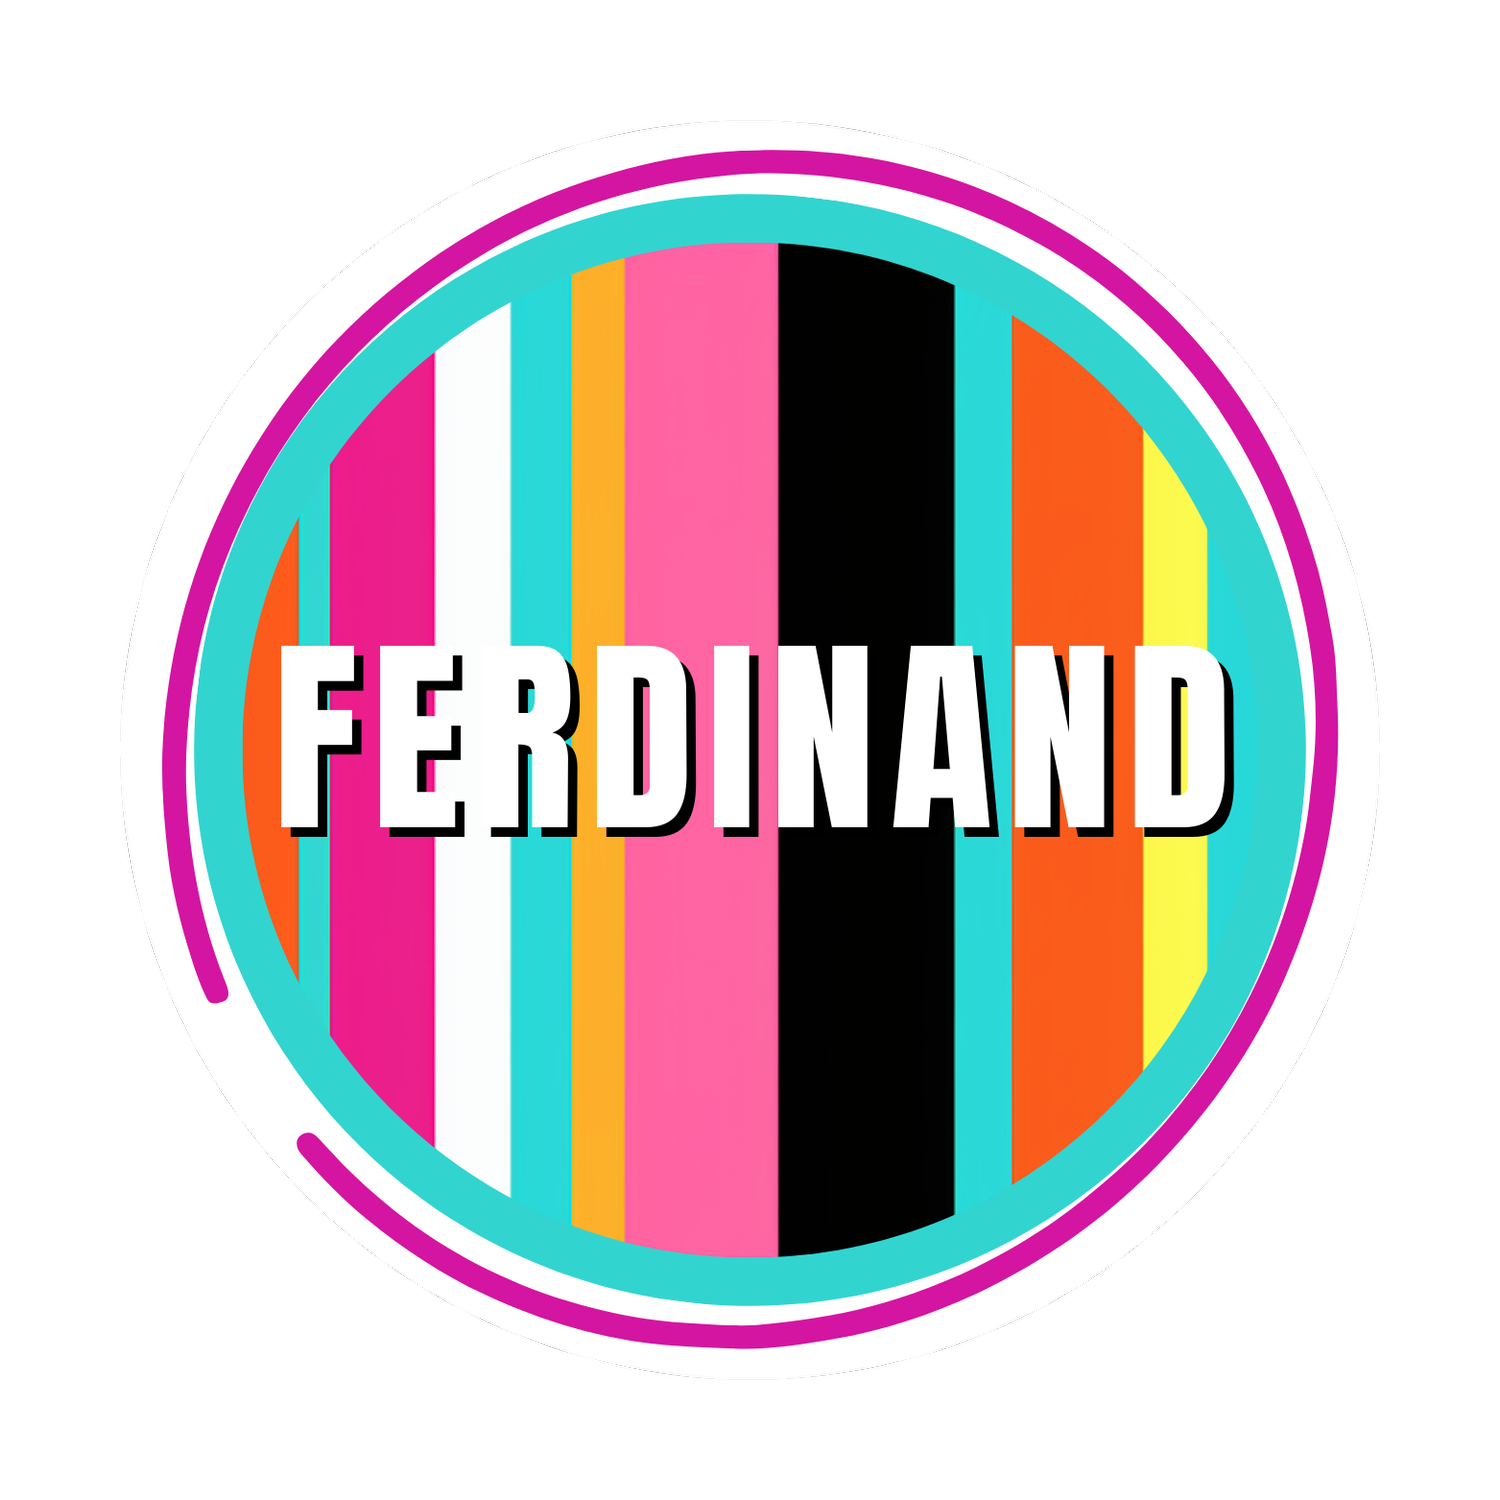 Ferdinand spirit